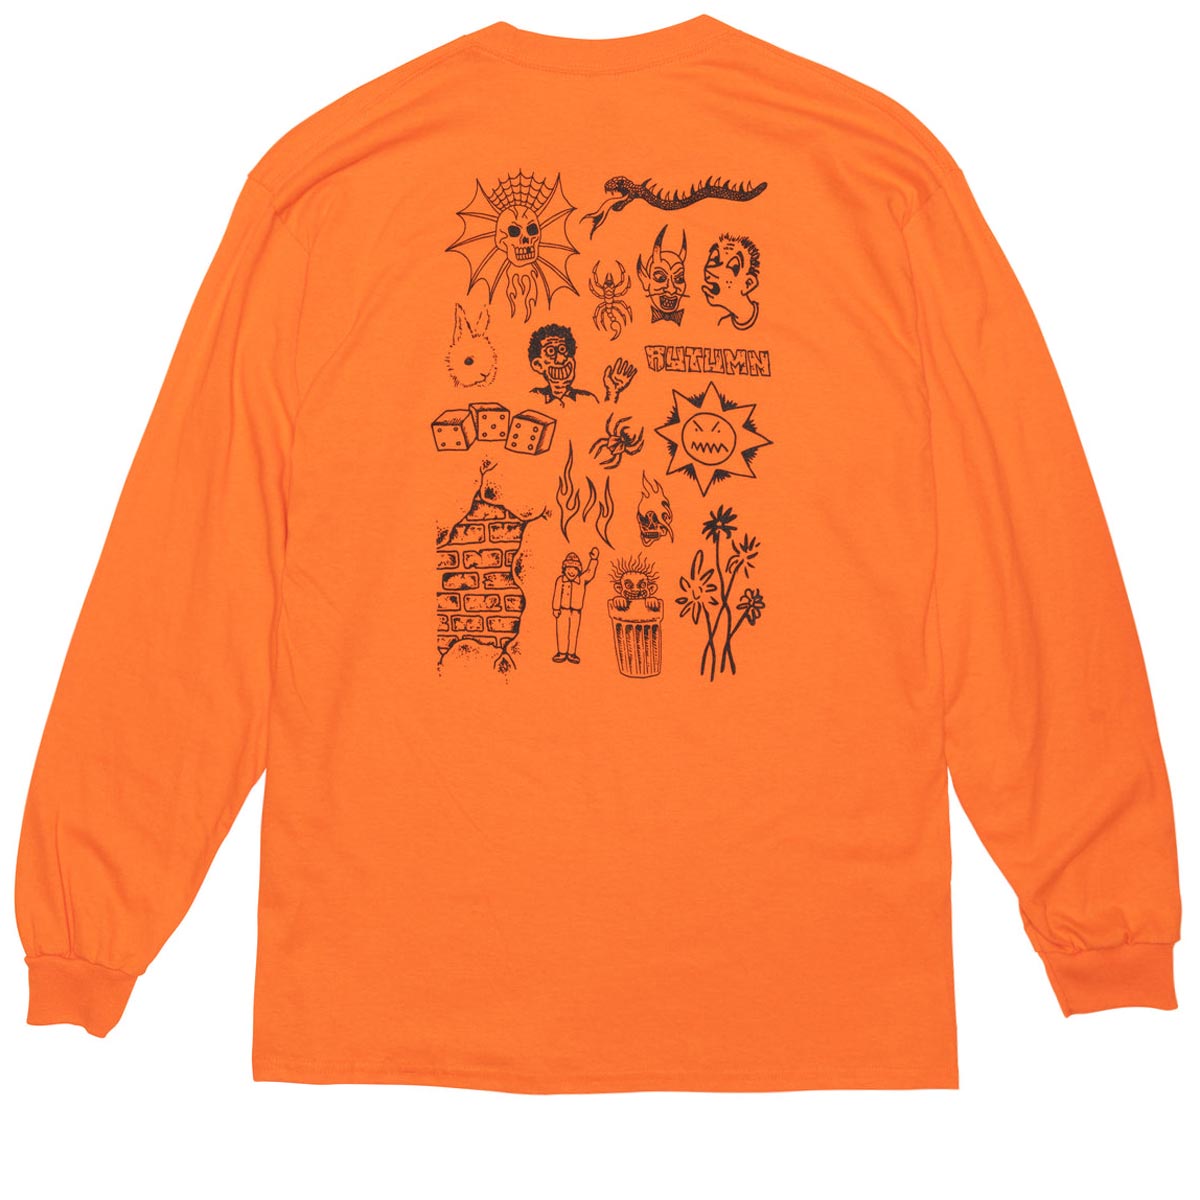 Autumn Flash Long Sleeve Shirt - Orange image 1